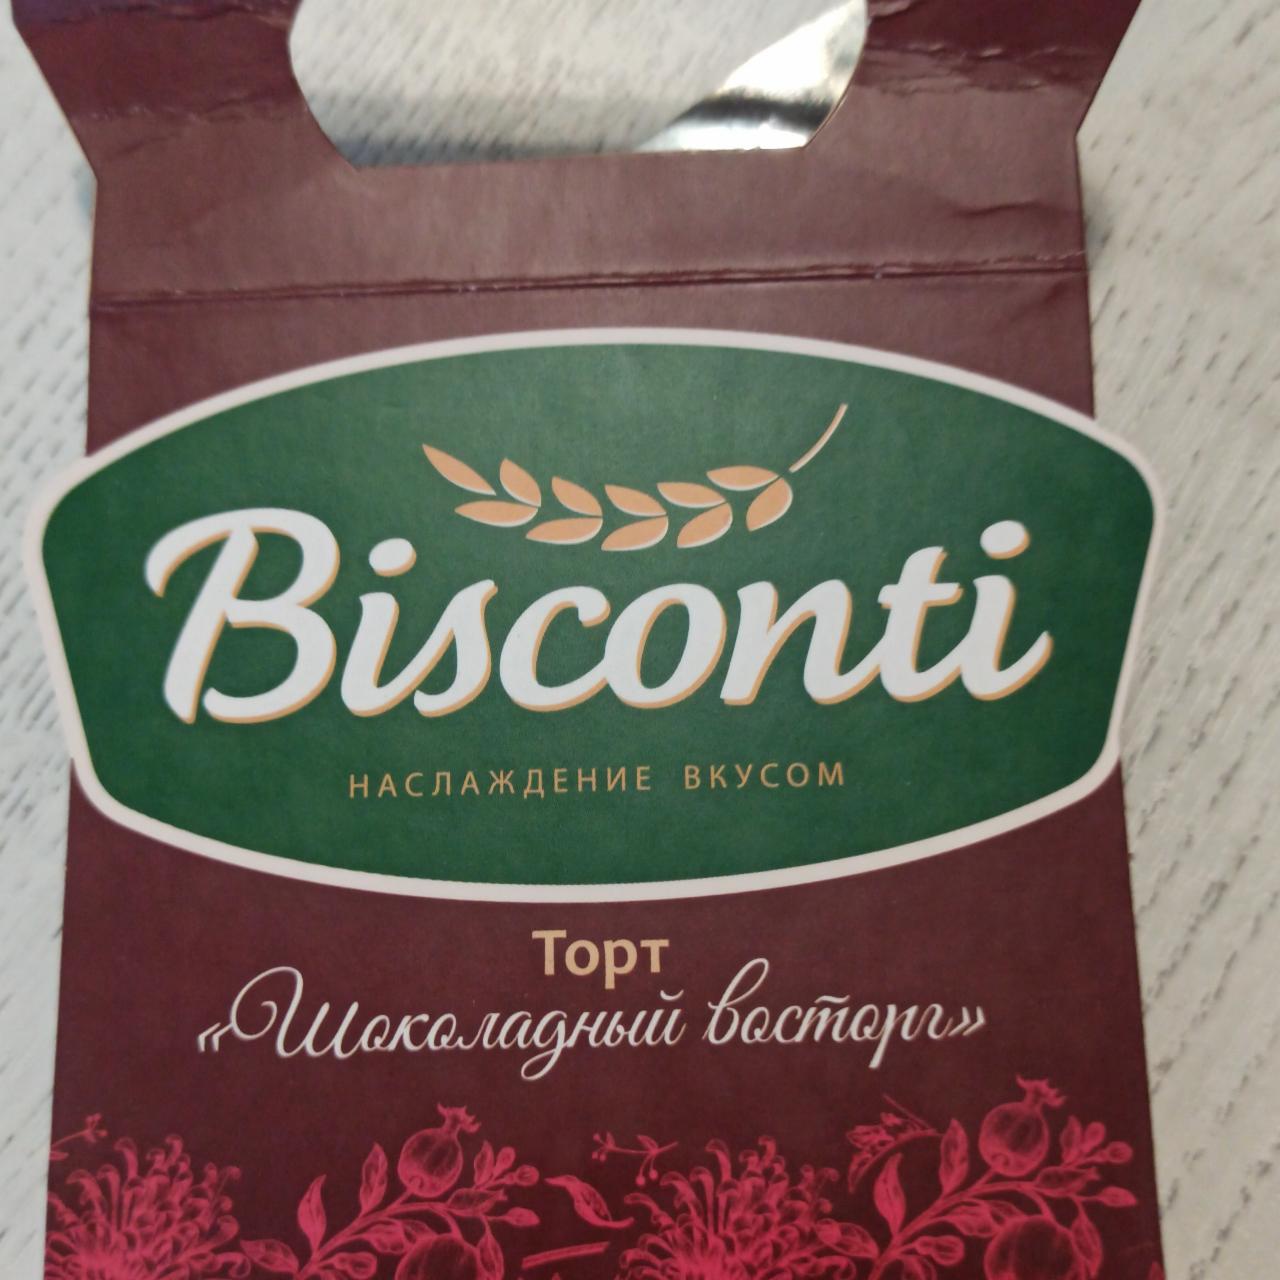 Фото - Торт шоколадный восторг Bisconti